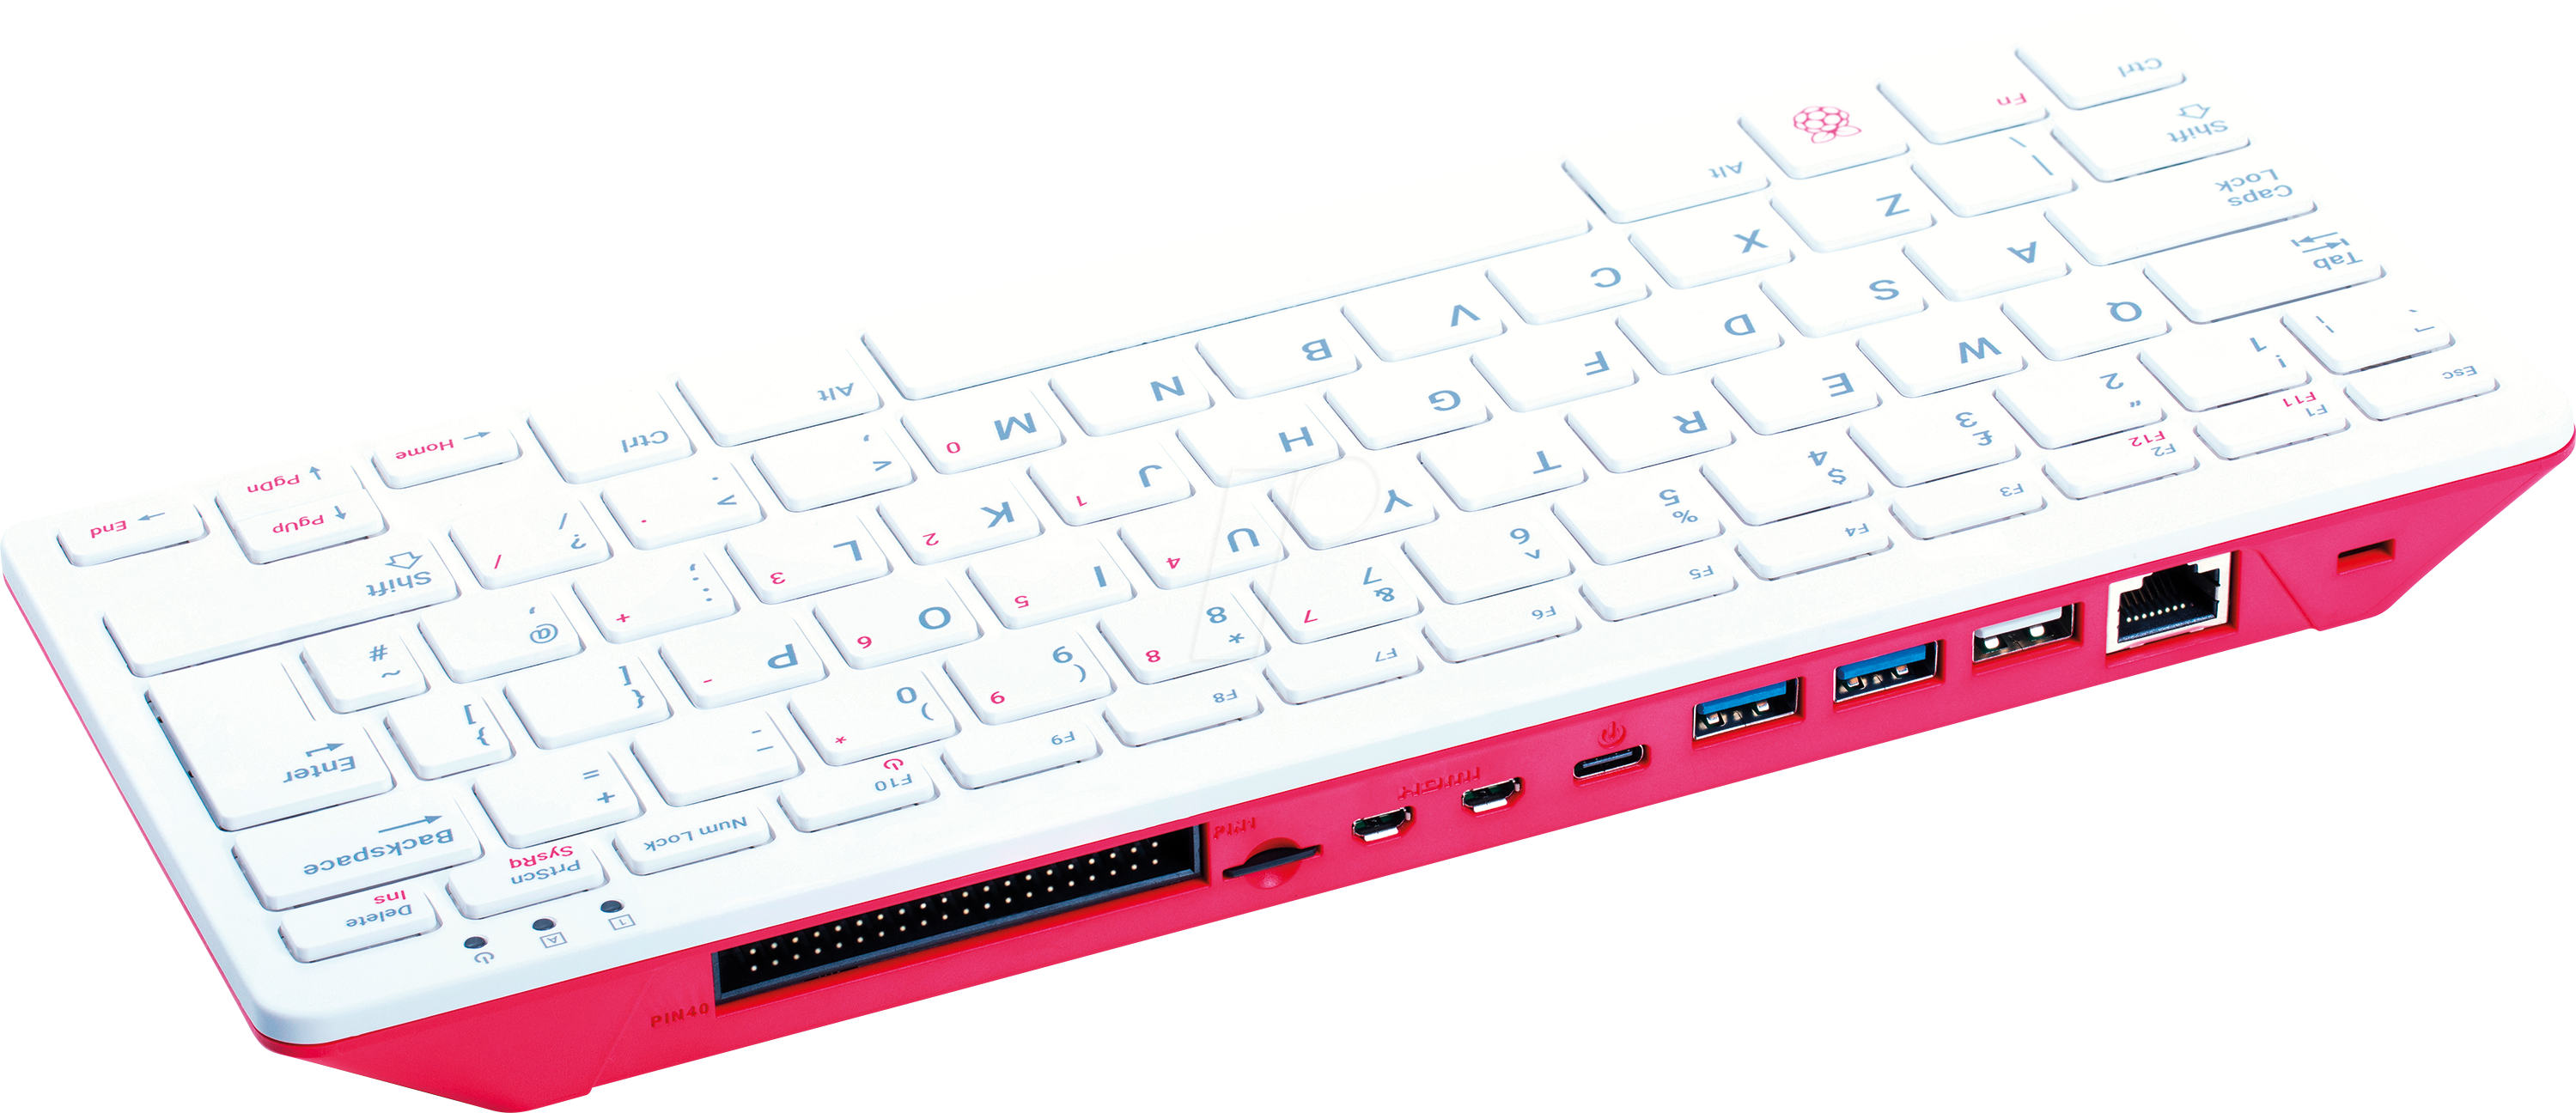 RASP PI400UK - Raspberry Pi 400 (UK), 4x 1,8GHz, 4GB RAM